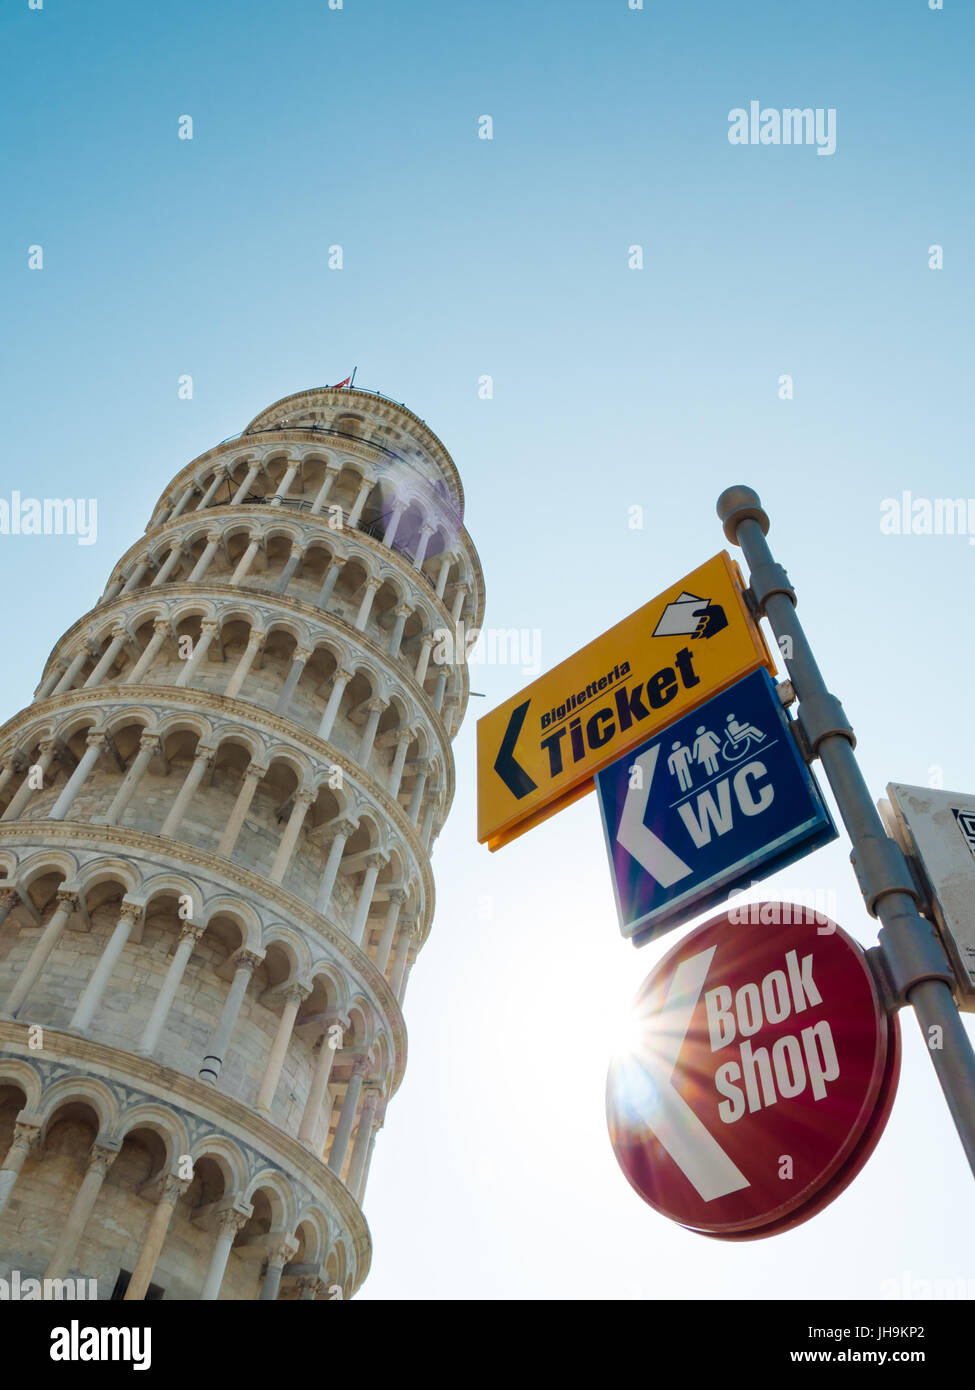 La Torre Pendente di Pisa in Italia con cartelli segnaletici stradali utilizzati in luoghi turistici: ticket, book shop, wc. Foto Stock